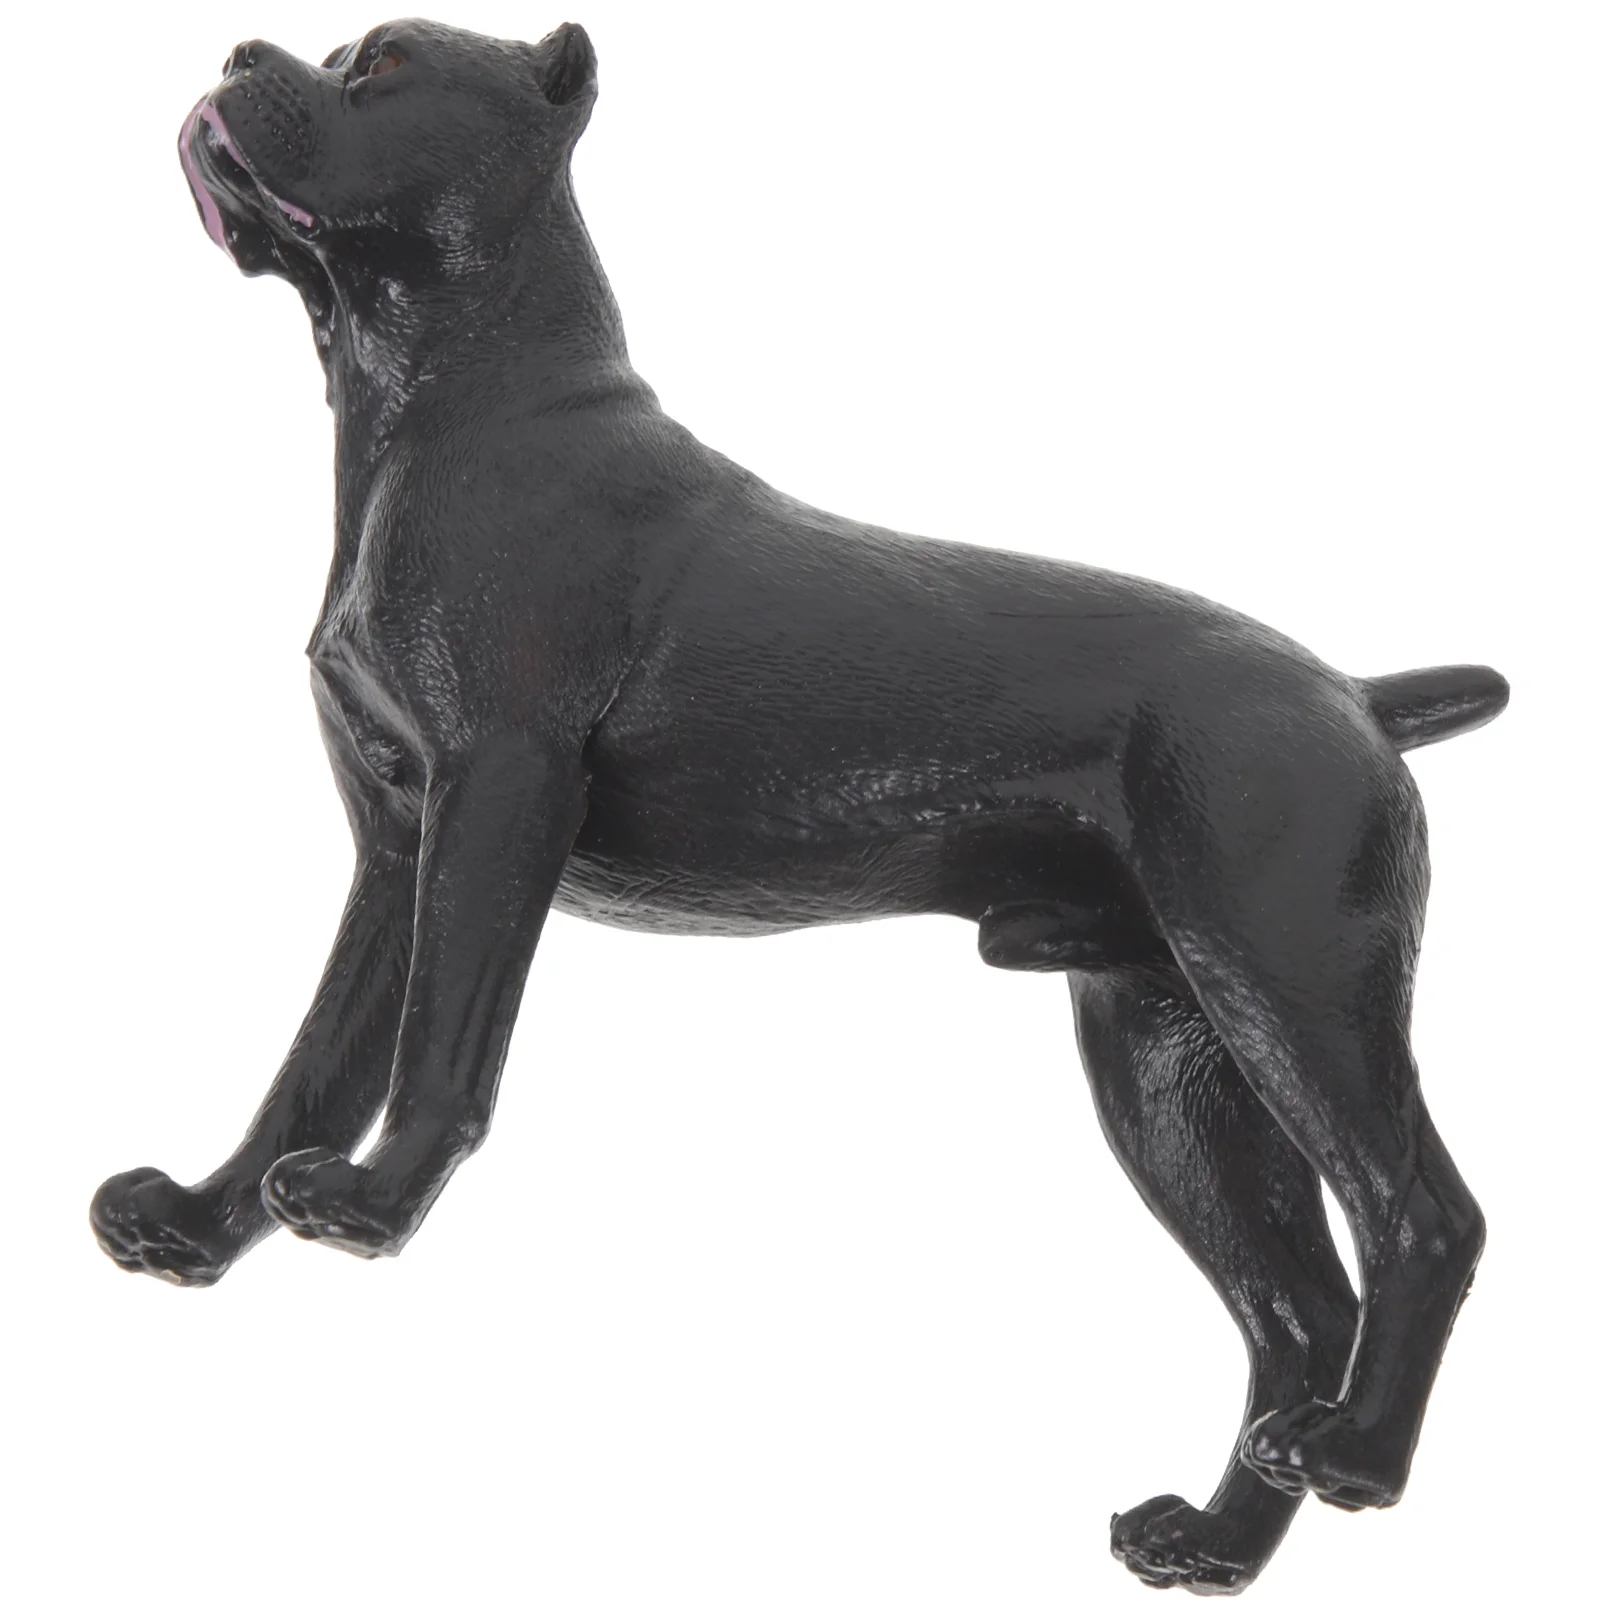 

Игрушечная собака, реалистичная модель модели, фигурка, настольное украшение, маленькая статуя, распознавание